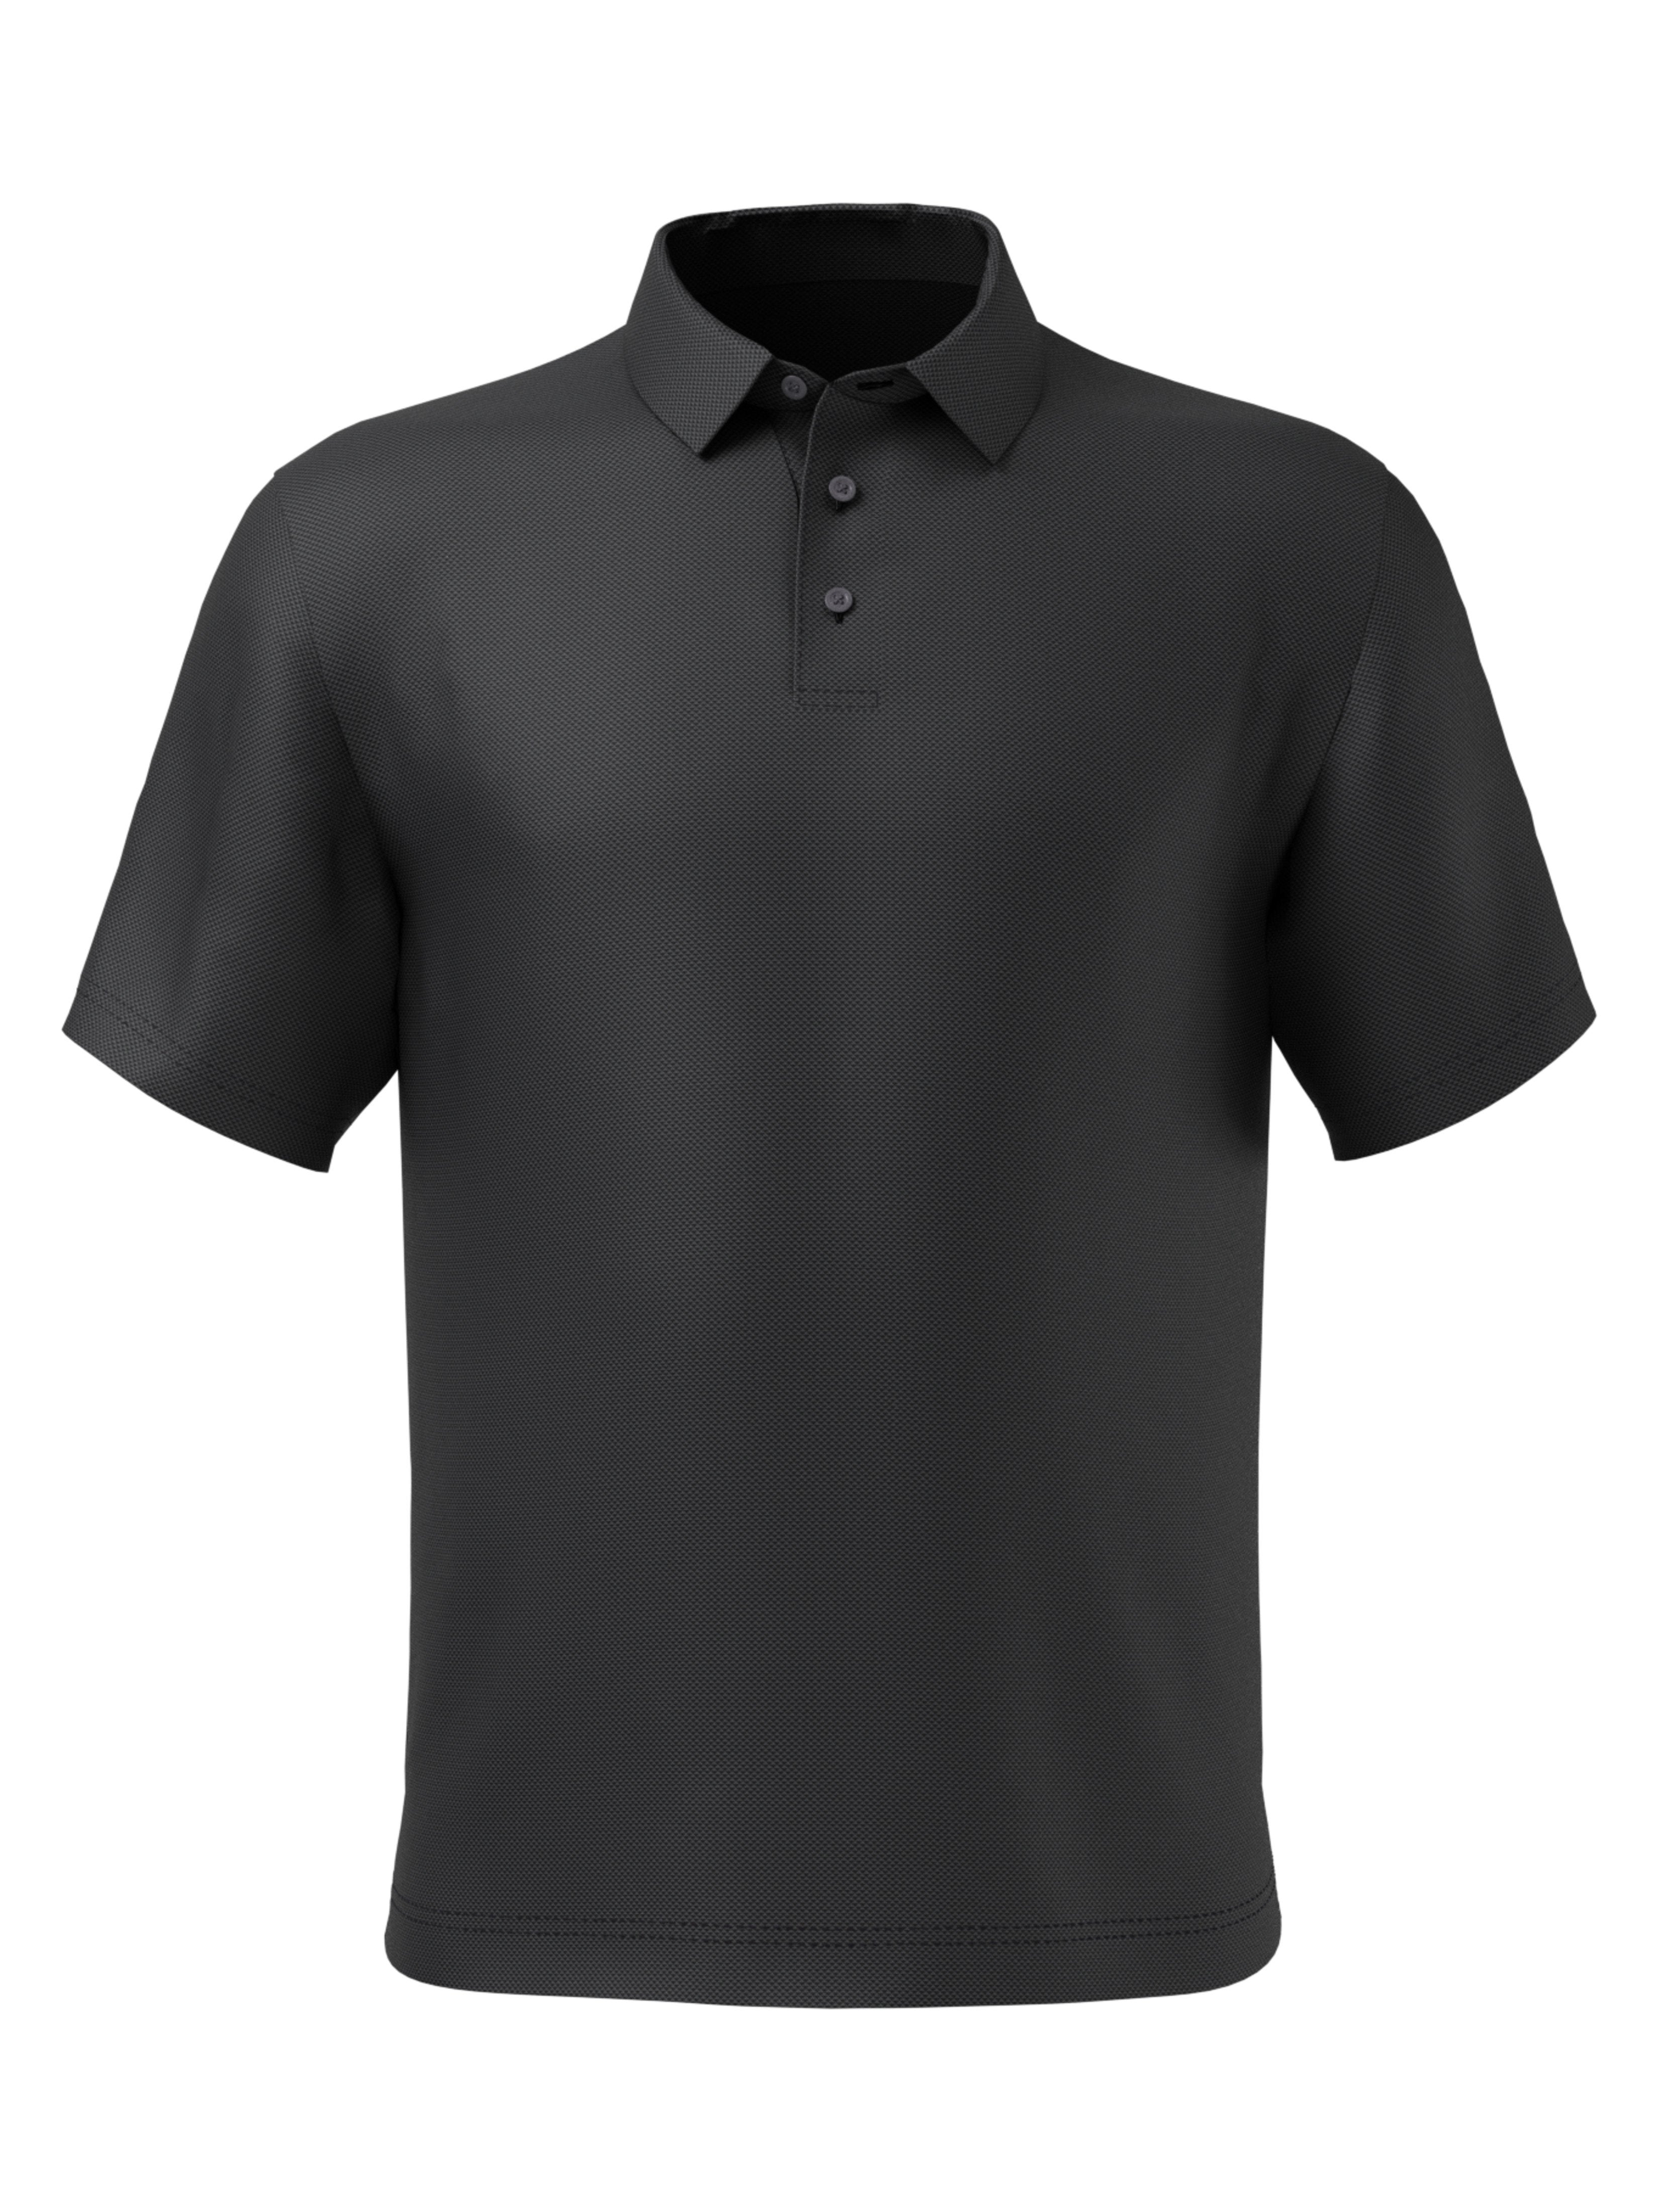 PGA TOUR Apparel Mens Mini Geometric Jacquard Polo Shirt, Size Large, Black, 100% Polyester | Golf Apparel Shop